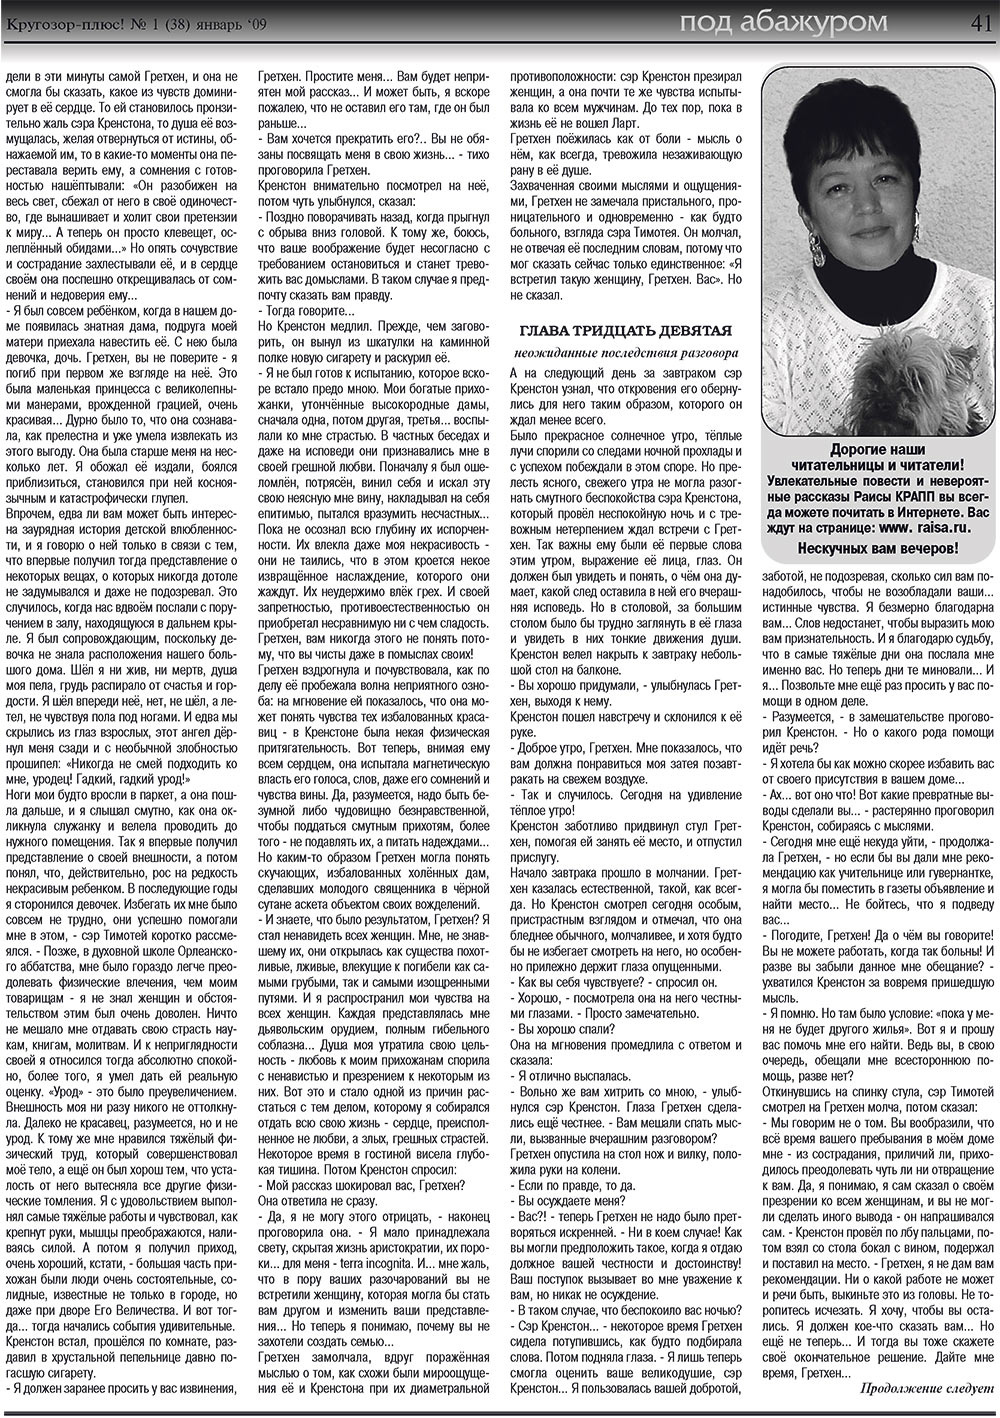 Кругозор плюс!, газета. 2009 №1 стр.41